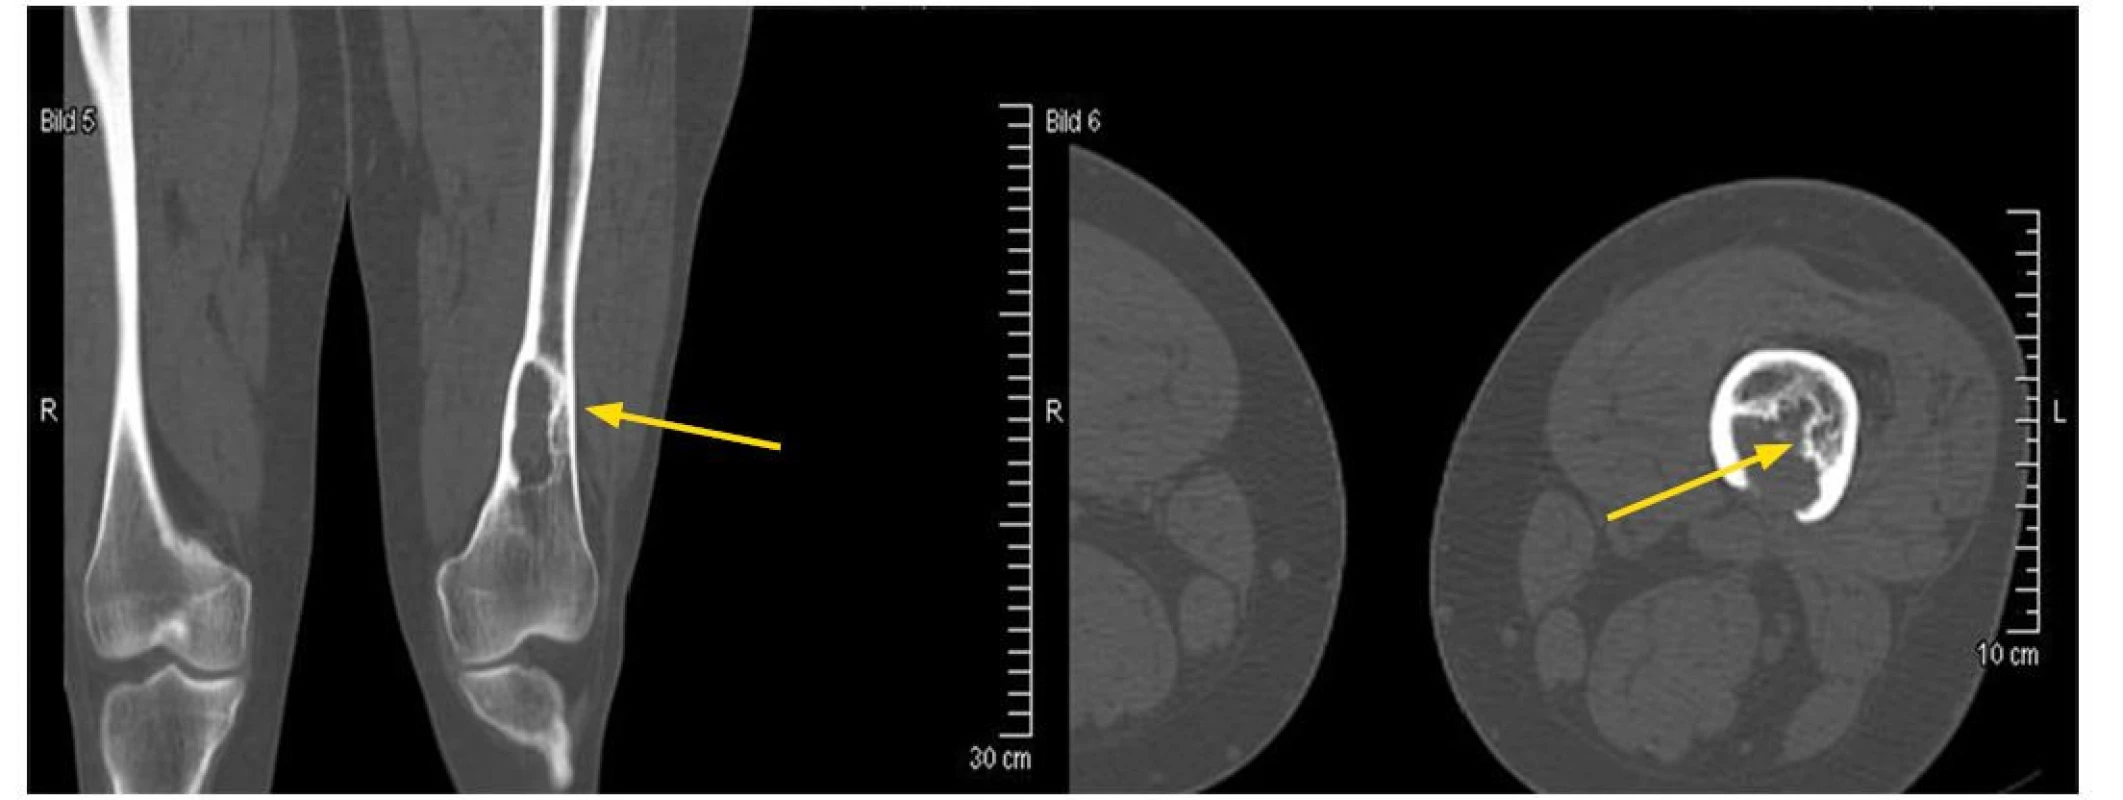 Osteolytické ložisko ve femuru narušující kortikalis. Snímek zapůjčil pro tuto publikaci prof. Claus Doberaurer z Gelsenkirchenu, Německo